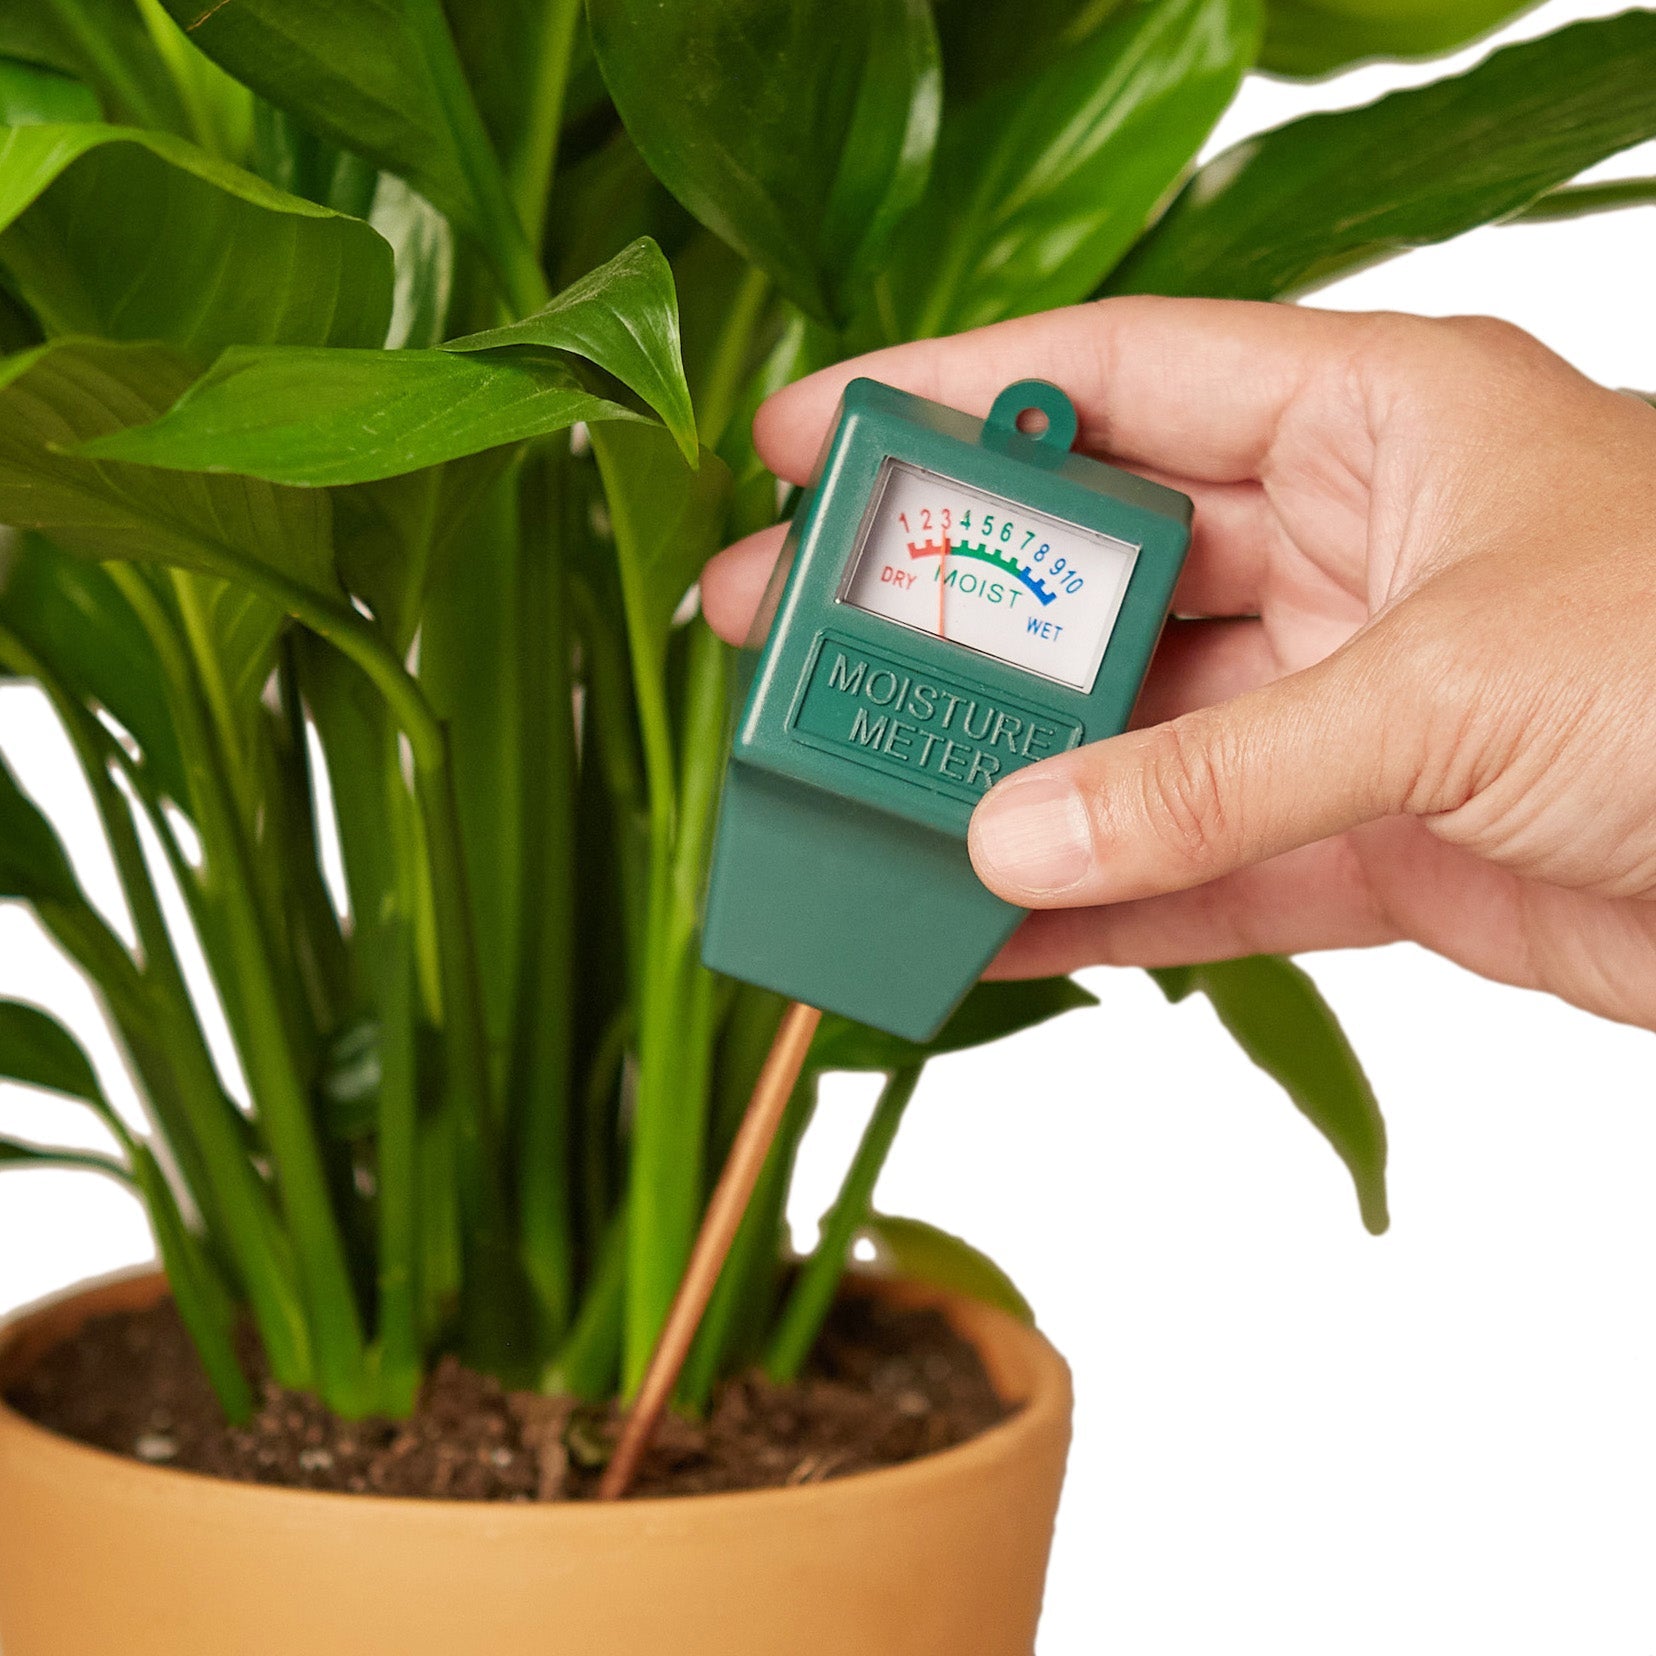 Indoor Plant Soil Moisture Meter